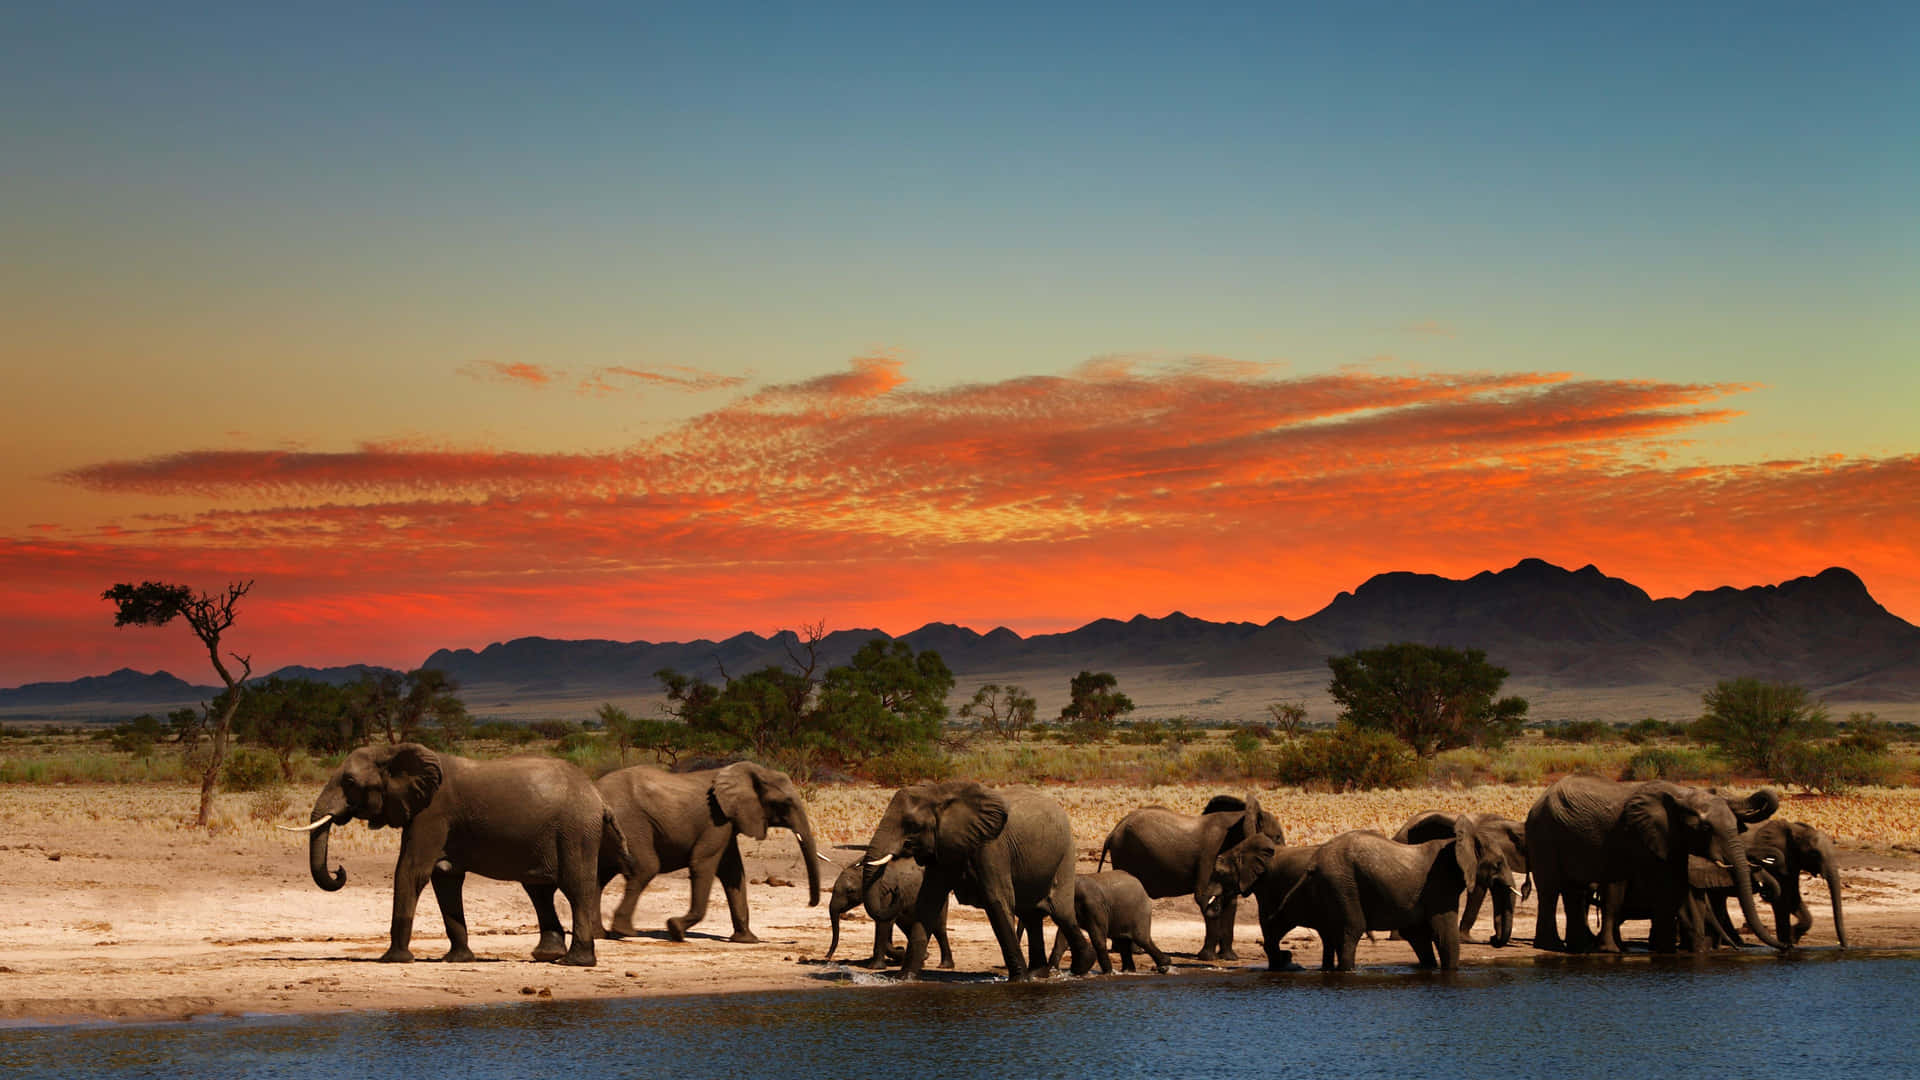 Imagenestética De Elefantes En La Naturaleza Africana Al Atardecer En El Safari.